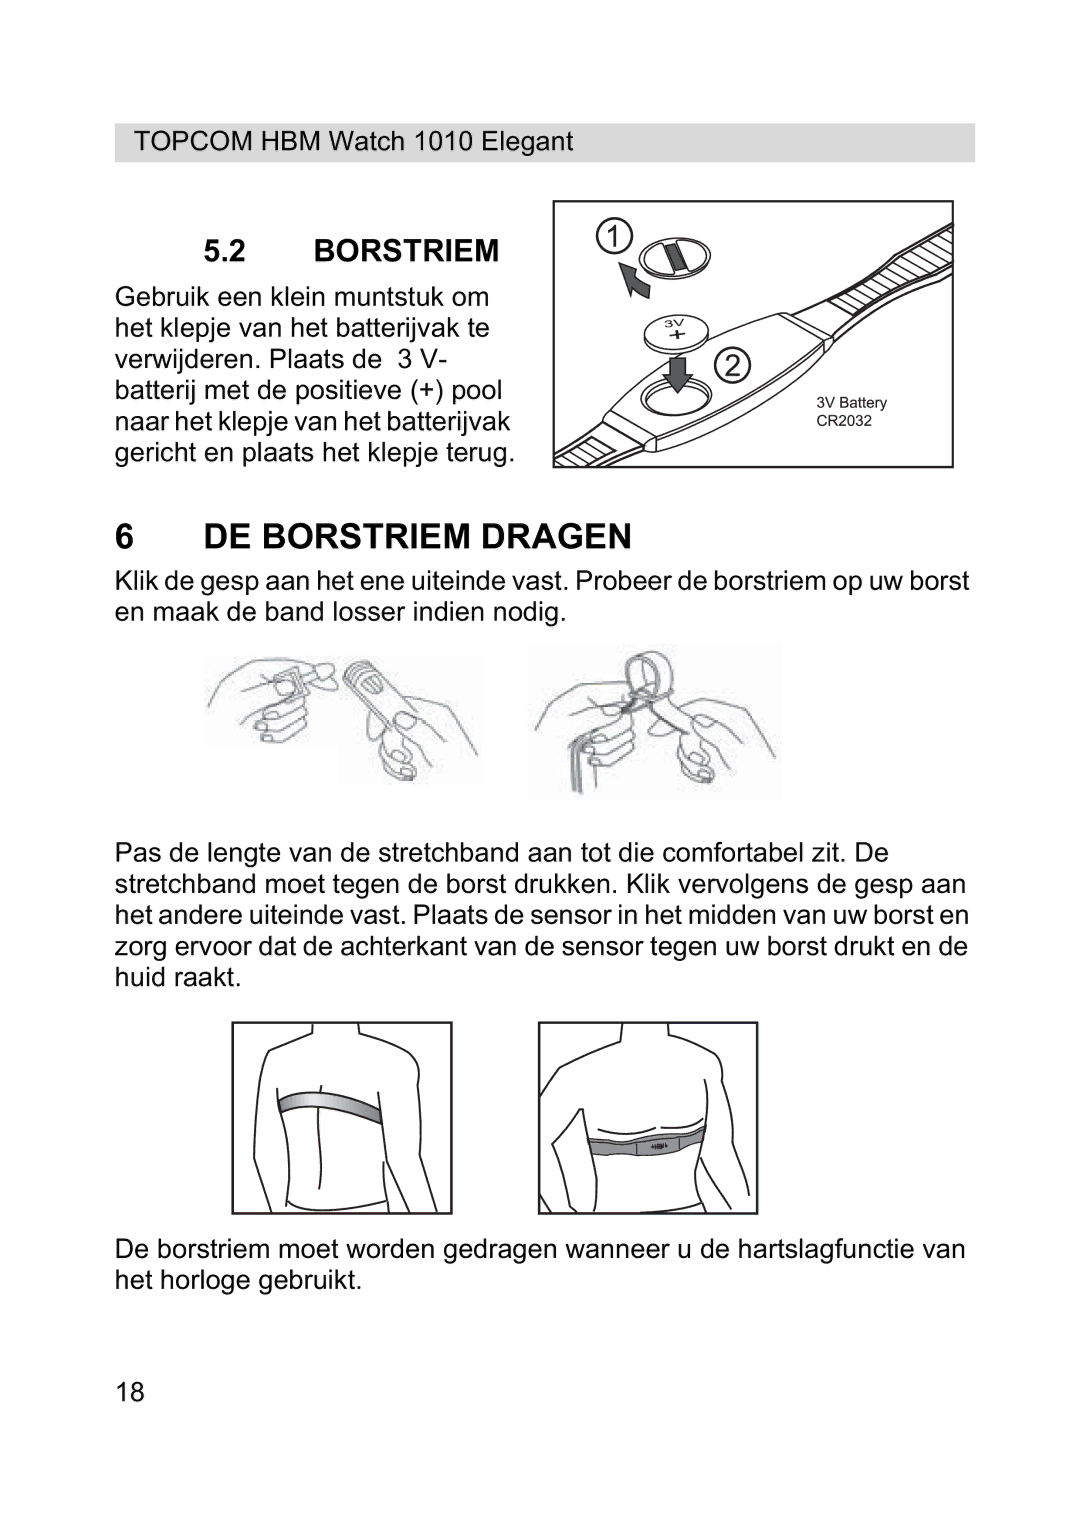 Topcom 1010 Elelgant manual DE Borstriem Dragen 